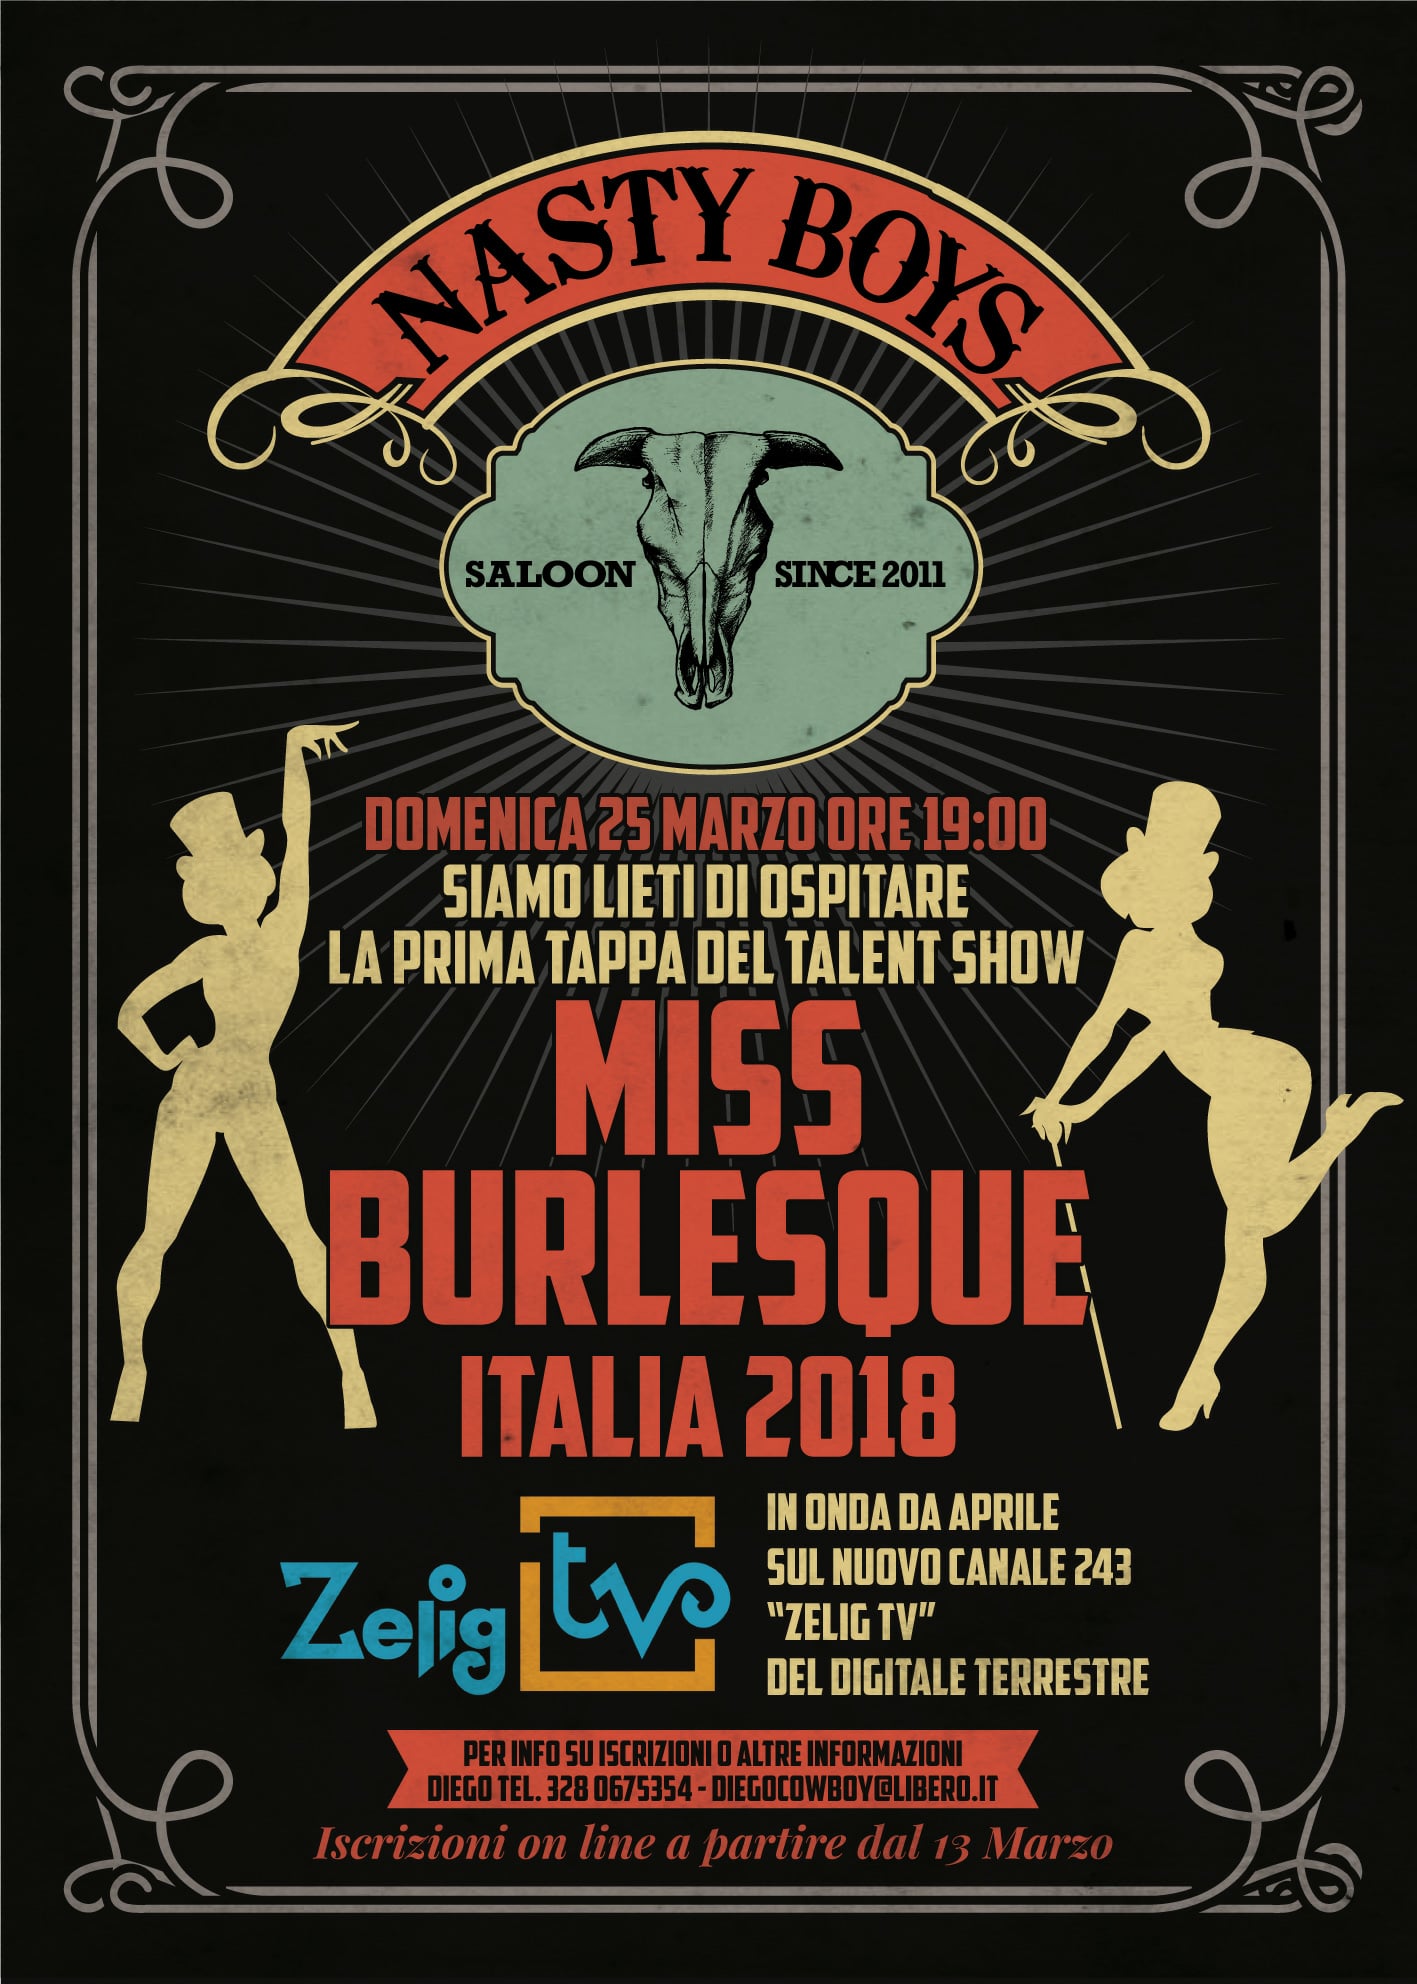 2018_03_25 - Miss Burlesque Italia @ Nasty Boys